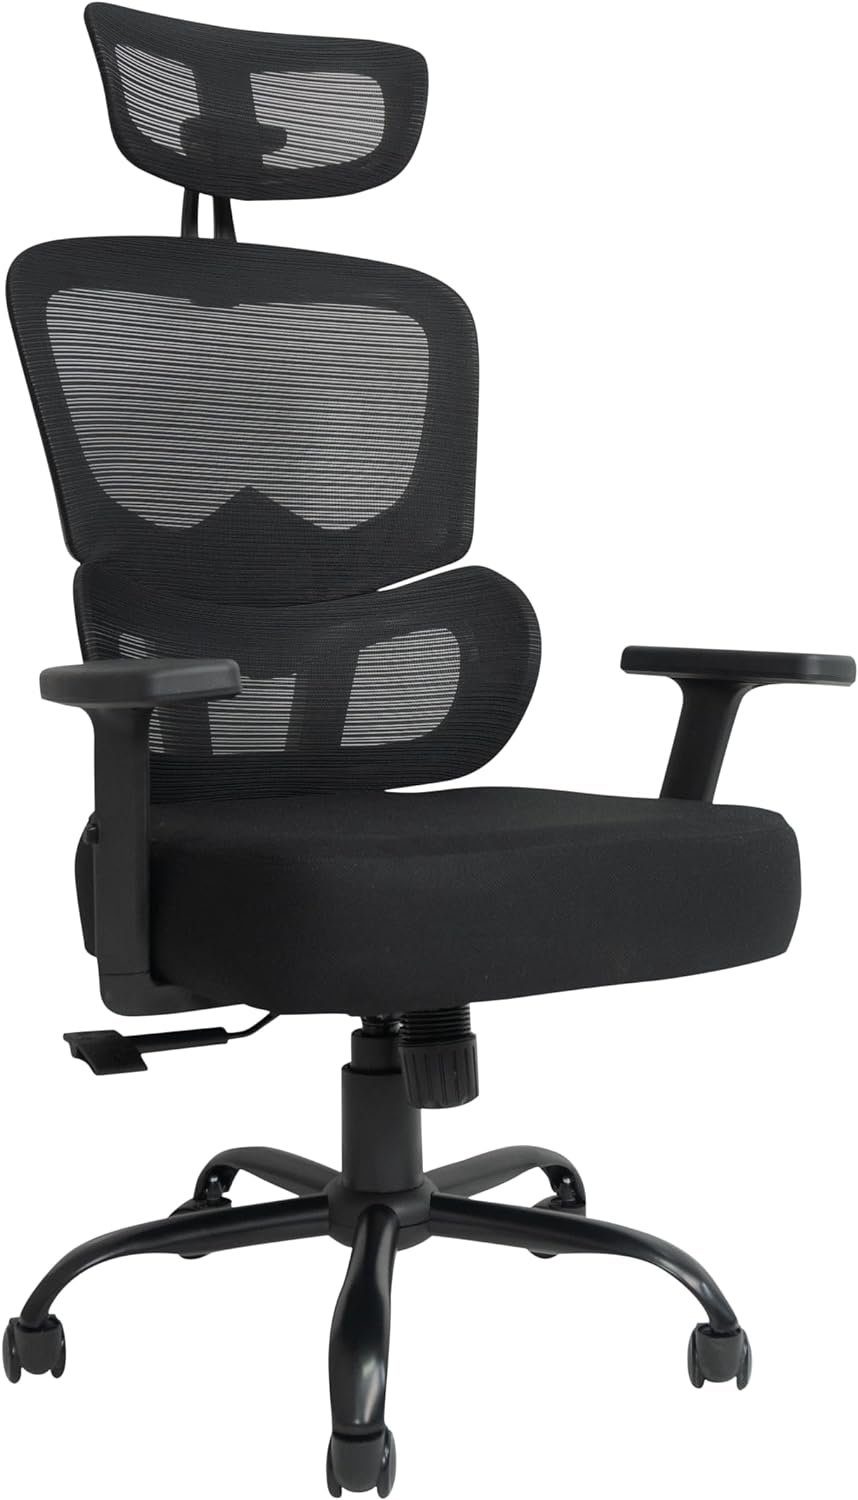 TITANO Bürostuhl (Bürostuhl ergonomisch: Schreibtischstuhl mit verstellbarem Sitz), Ergonomischer Bürostuhl - Schreibtischstuhl mit Verstellbarer Höhe